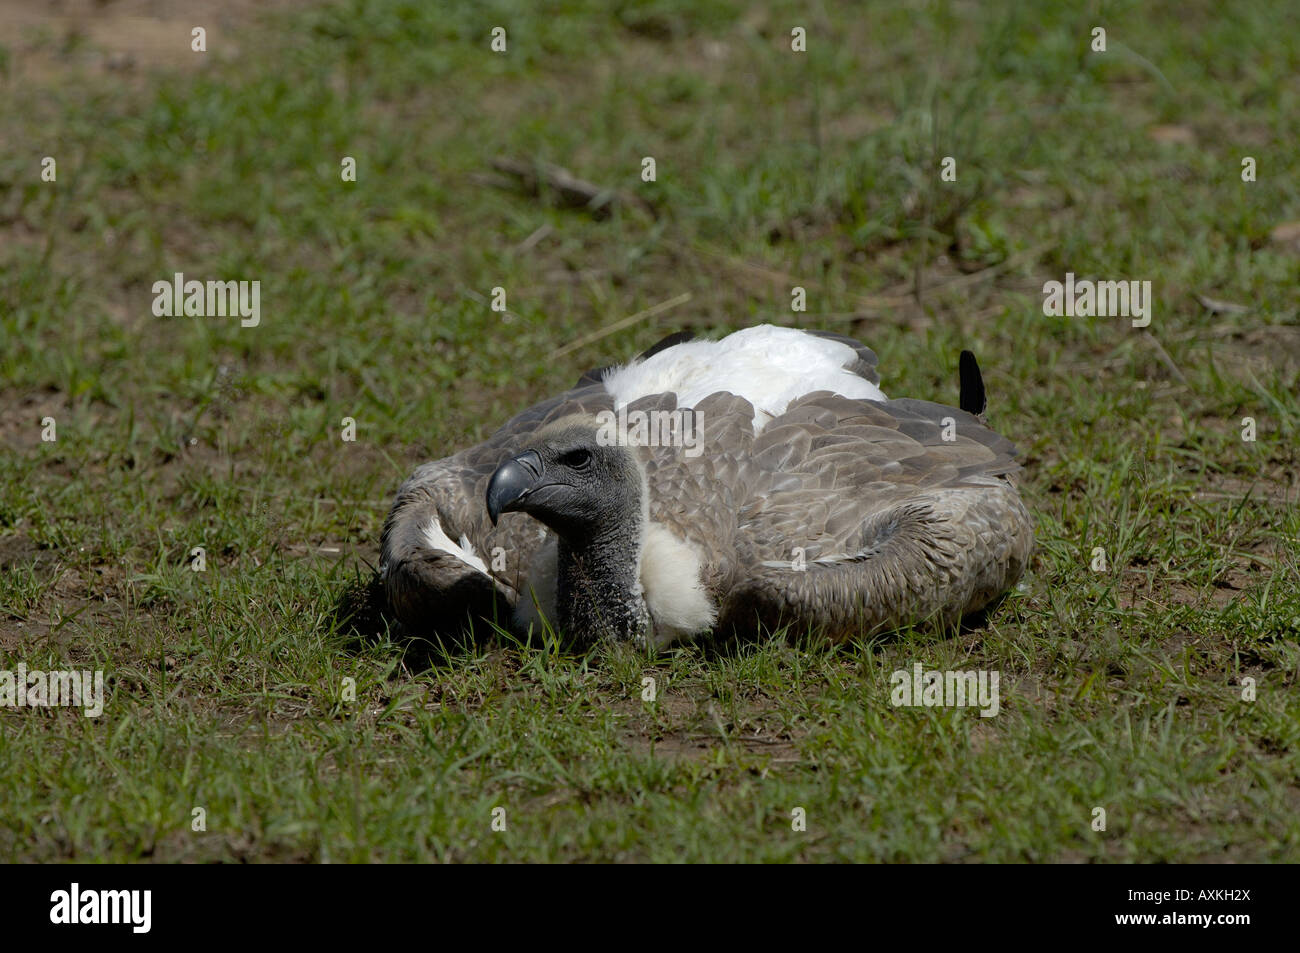 Dorso bianco Vulture Gyps africanus Masai Mara Kenya adulto in appoggio sul terreno sdraiato Foto Stock